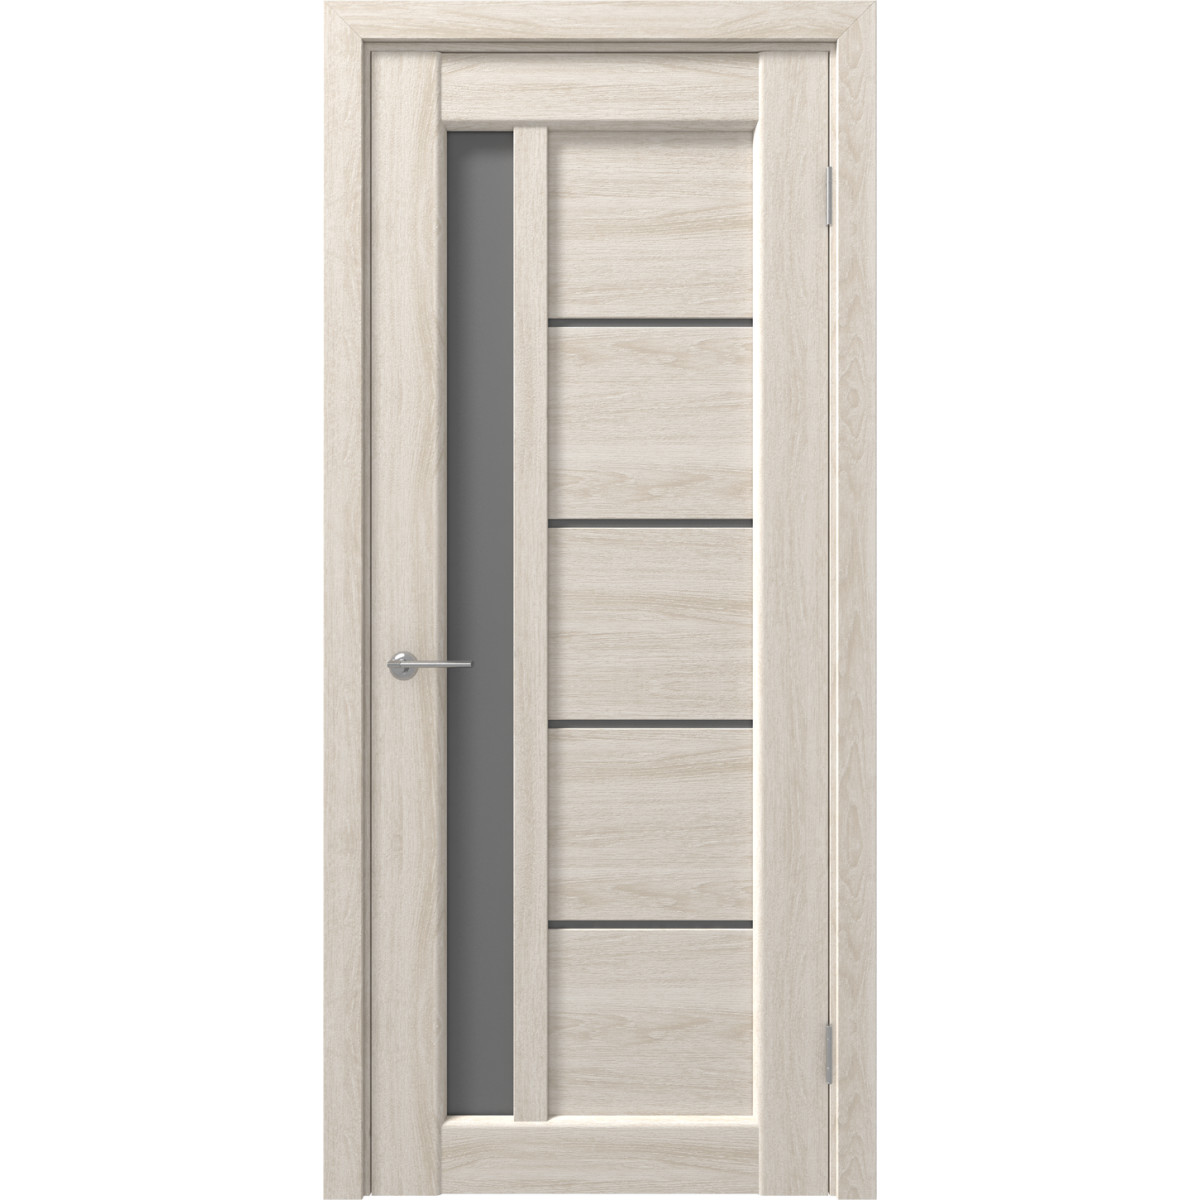 Дверь межкомнатная остеклённая с замком и петлями в комплекте Artens Брио 70x200 см ПВХ цвет дуб филадельфия